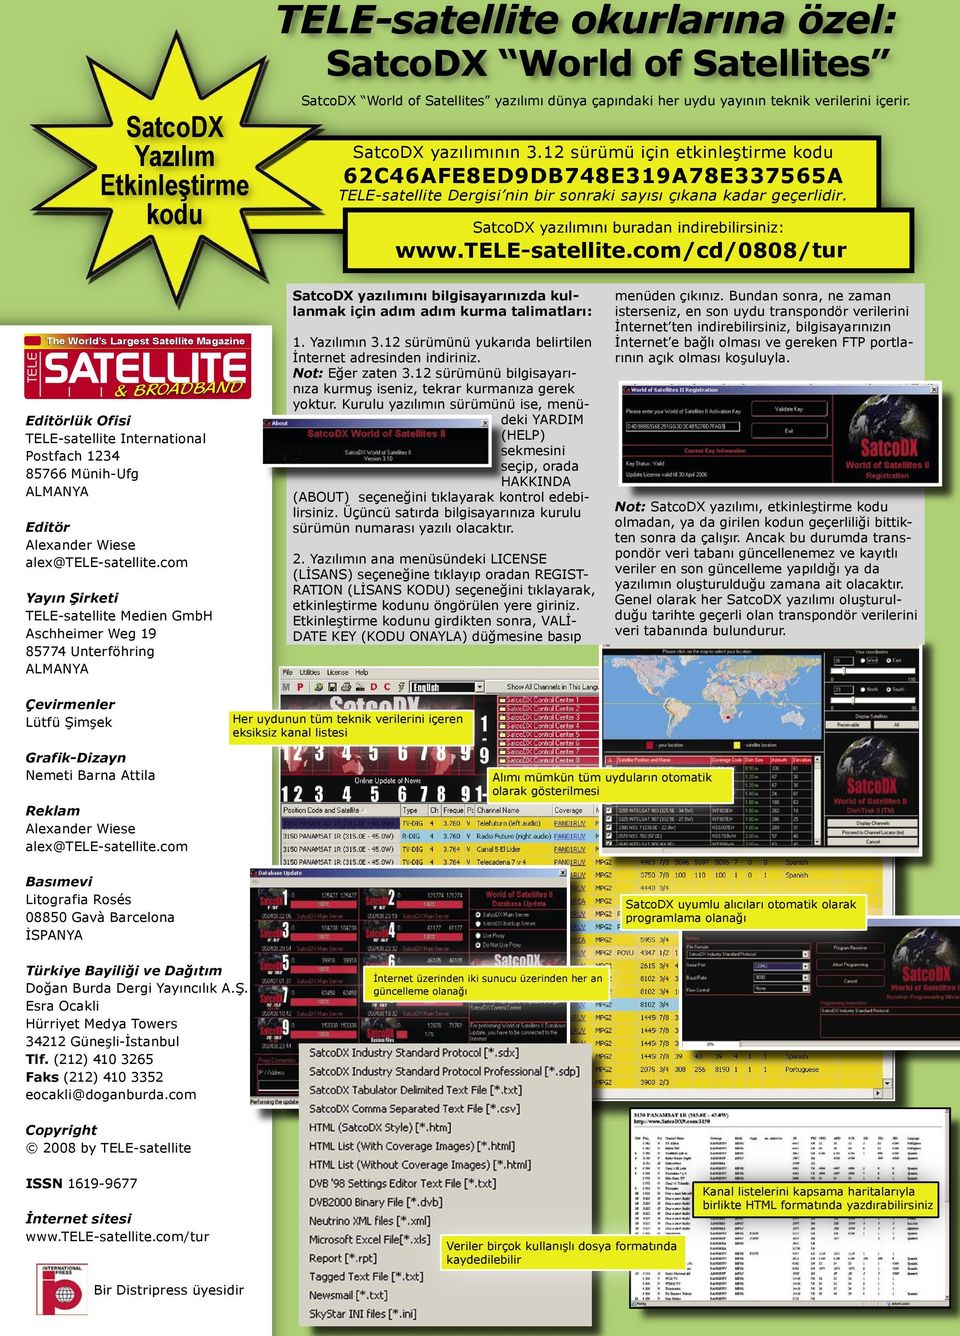 SatcoDX yazılımını buradan indirebilirsiniz: www.tele-satellite.